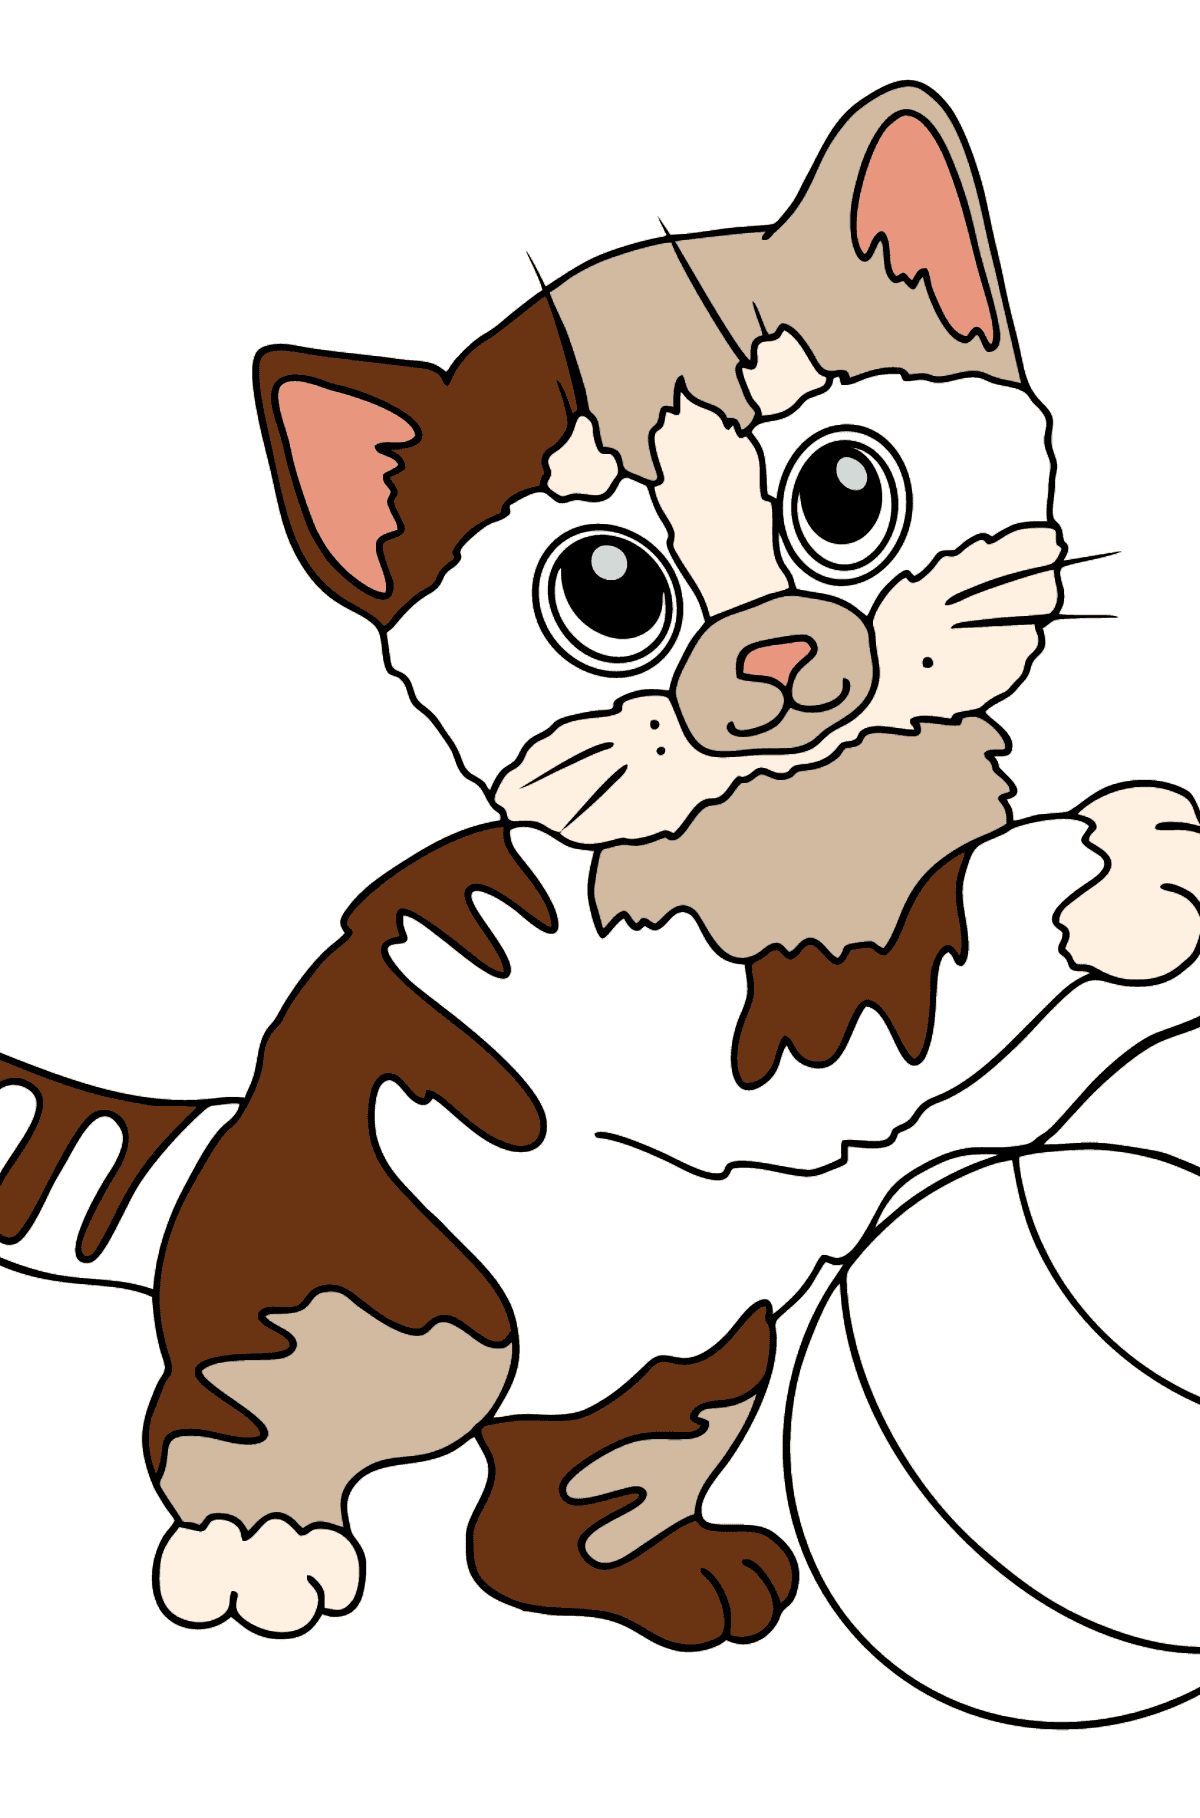 Página para colorear de gatito alegre - Dibujos para Colorear para Niños